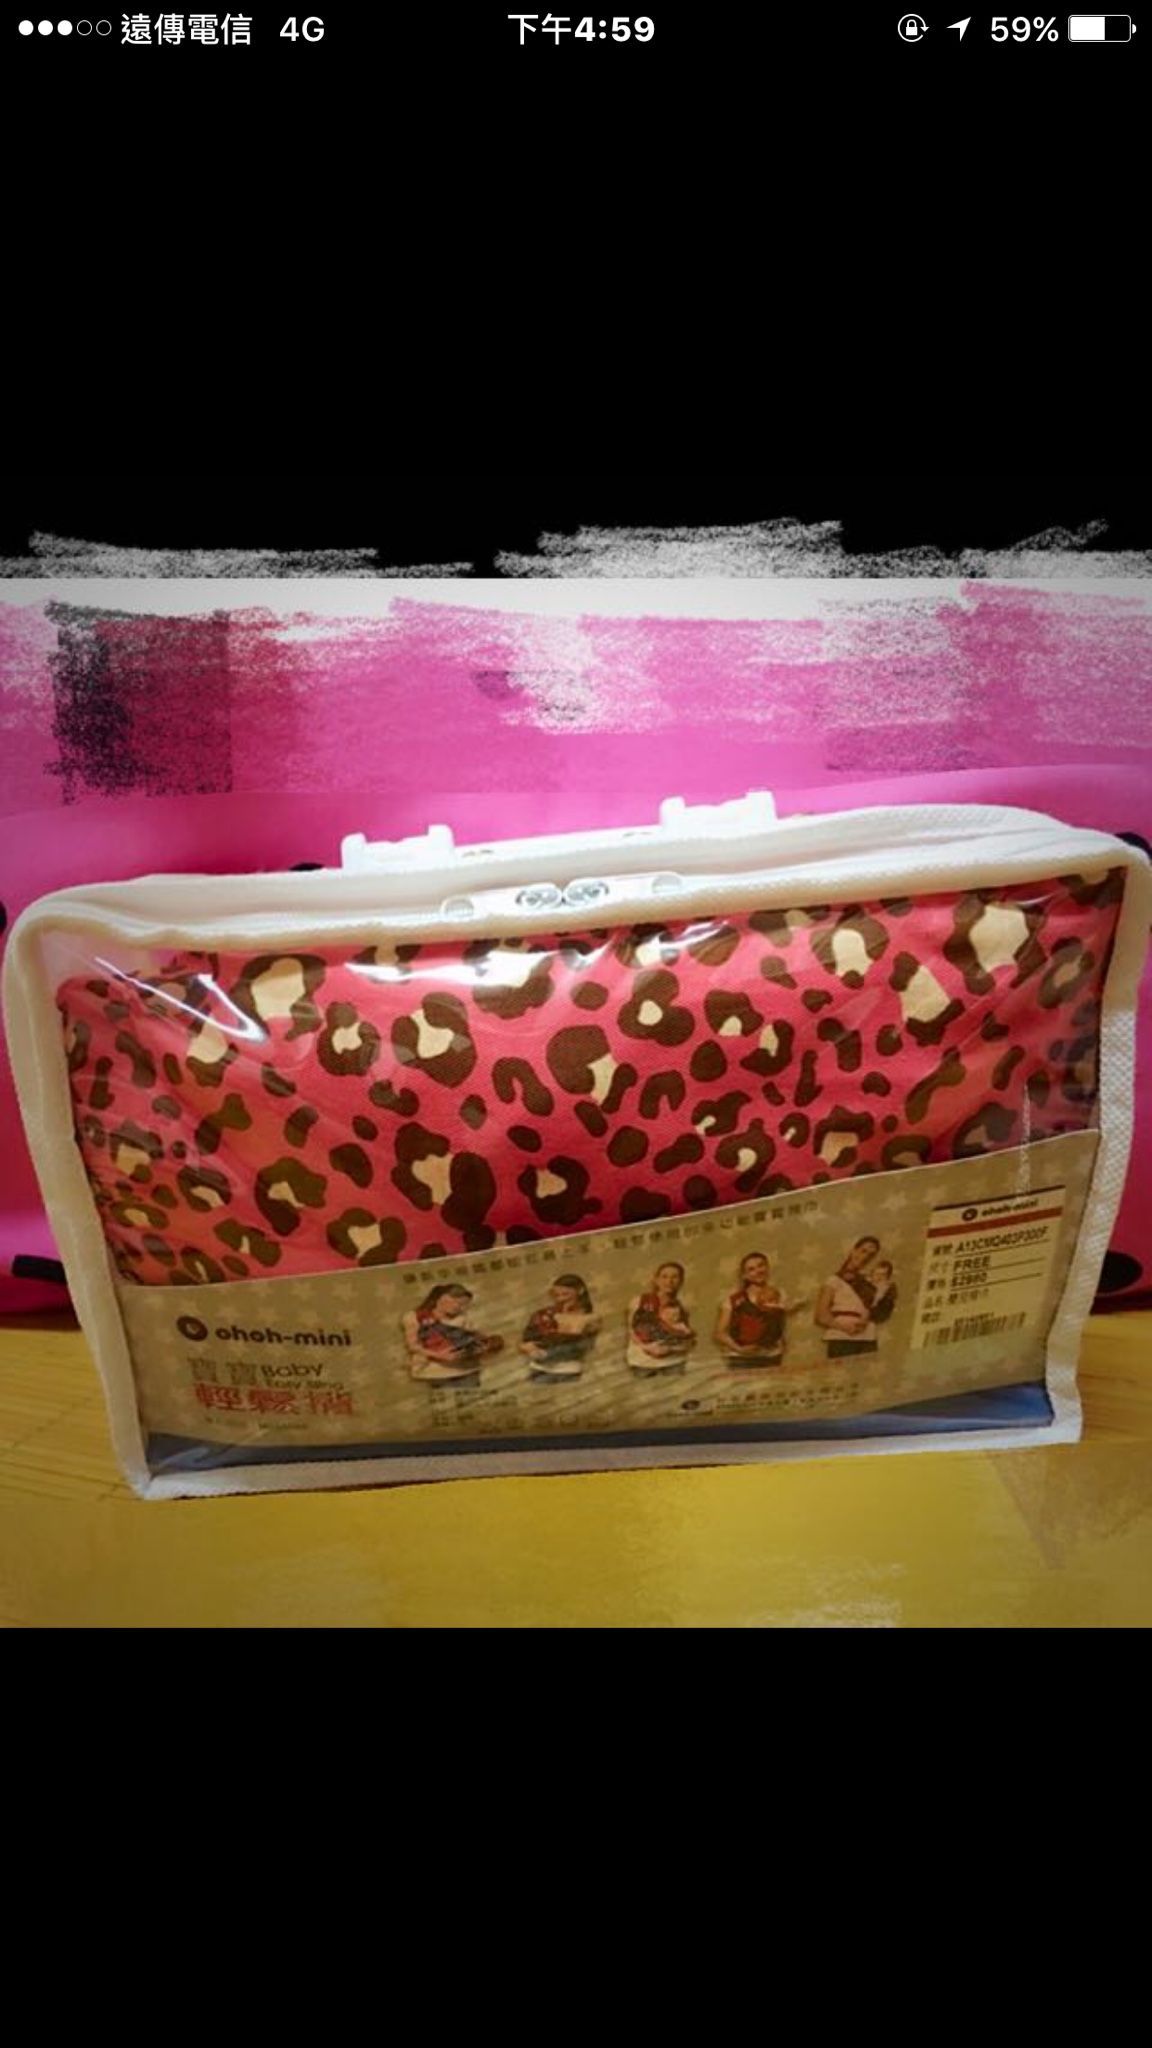 售✨全新✨ohoh-mini寶寶輕鬆揹✨限量粉紅豹紋系列